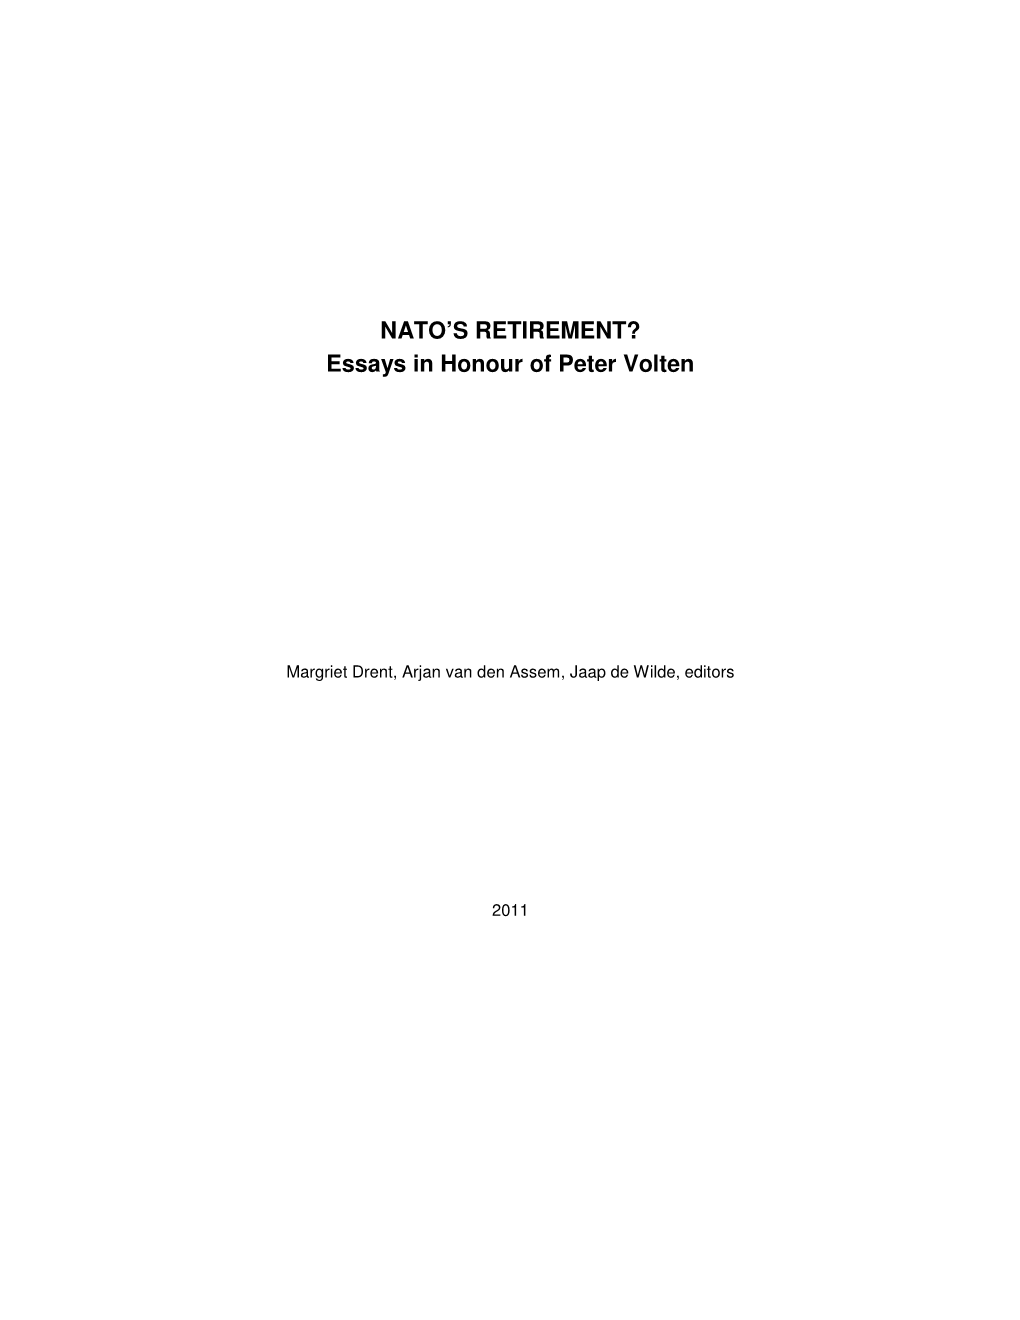 NATO's RETIREMENT? Essays in Honour of Peter Volten